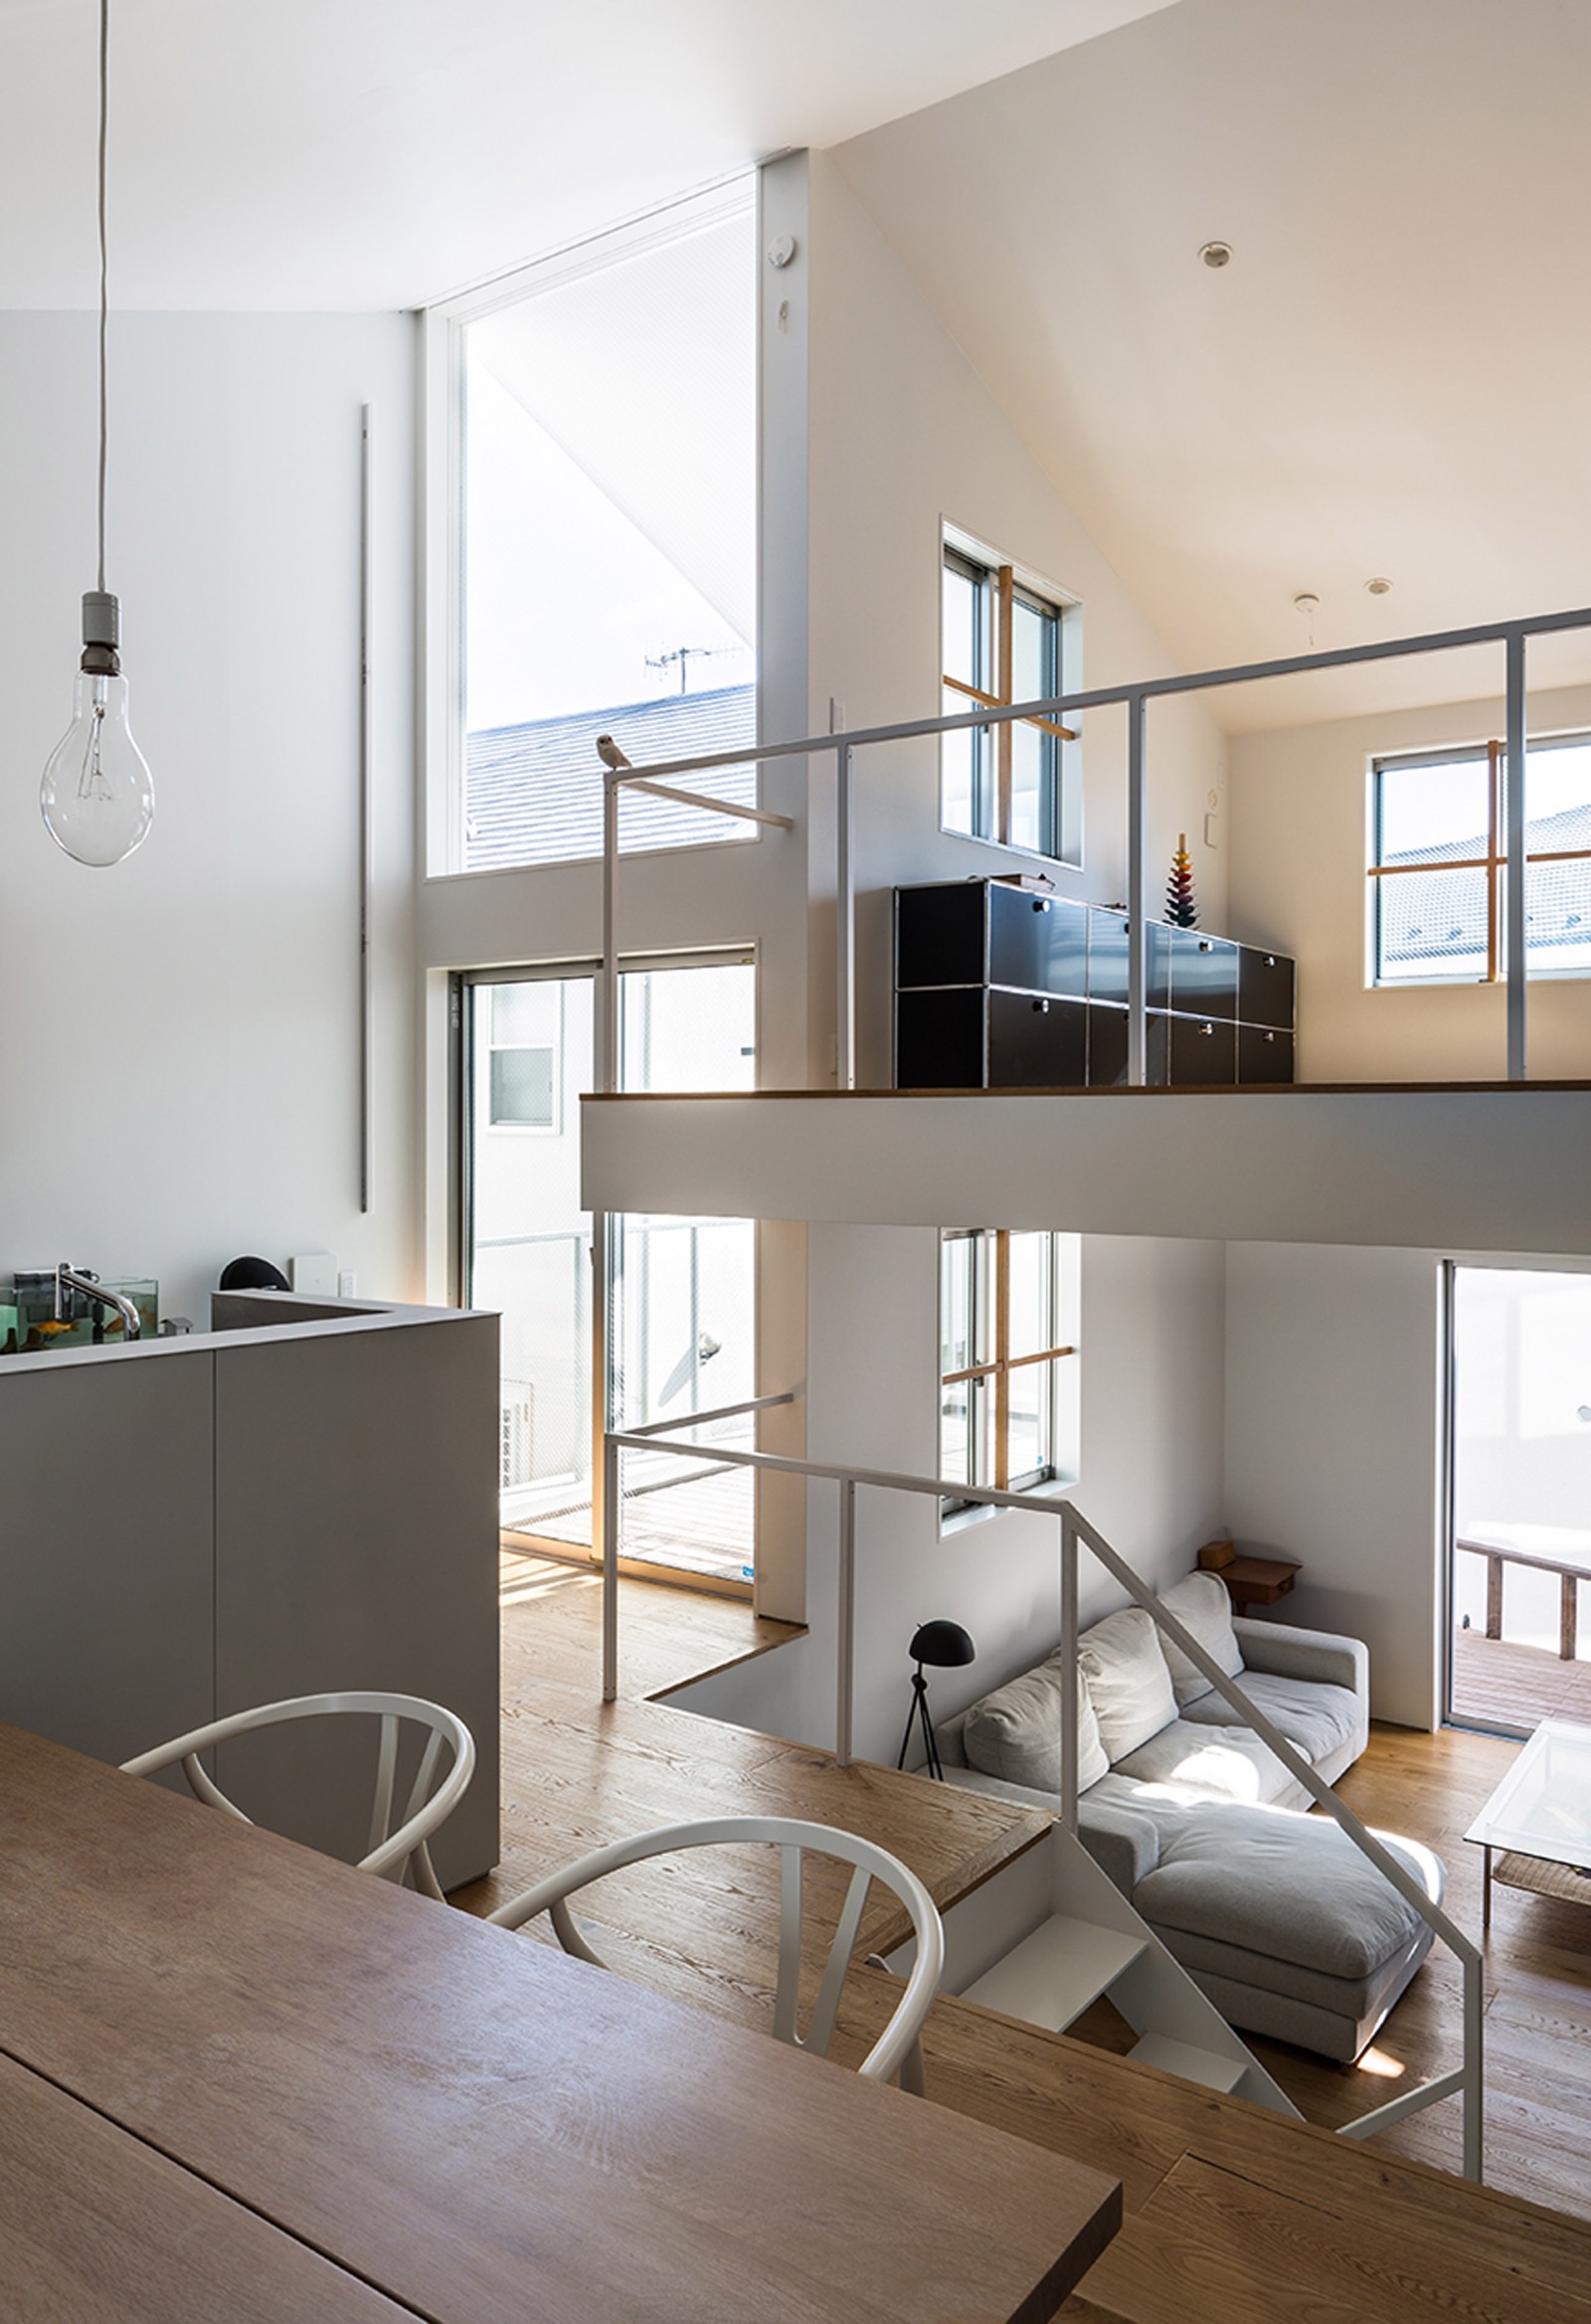 Nội thất được lựa chọn tinh tế để tạo cảm giác bên trong ngôi nhà nhẹ nhàng và thoáng mát nhất có thể. Bao gồmp/cầu thang khung thép màu trắng cơ bản, khung cửa sổ đơn giản, một nhà bếp giản dị và sàn gỗ.